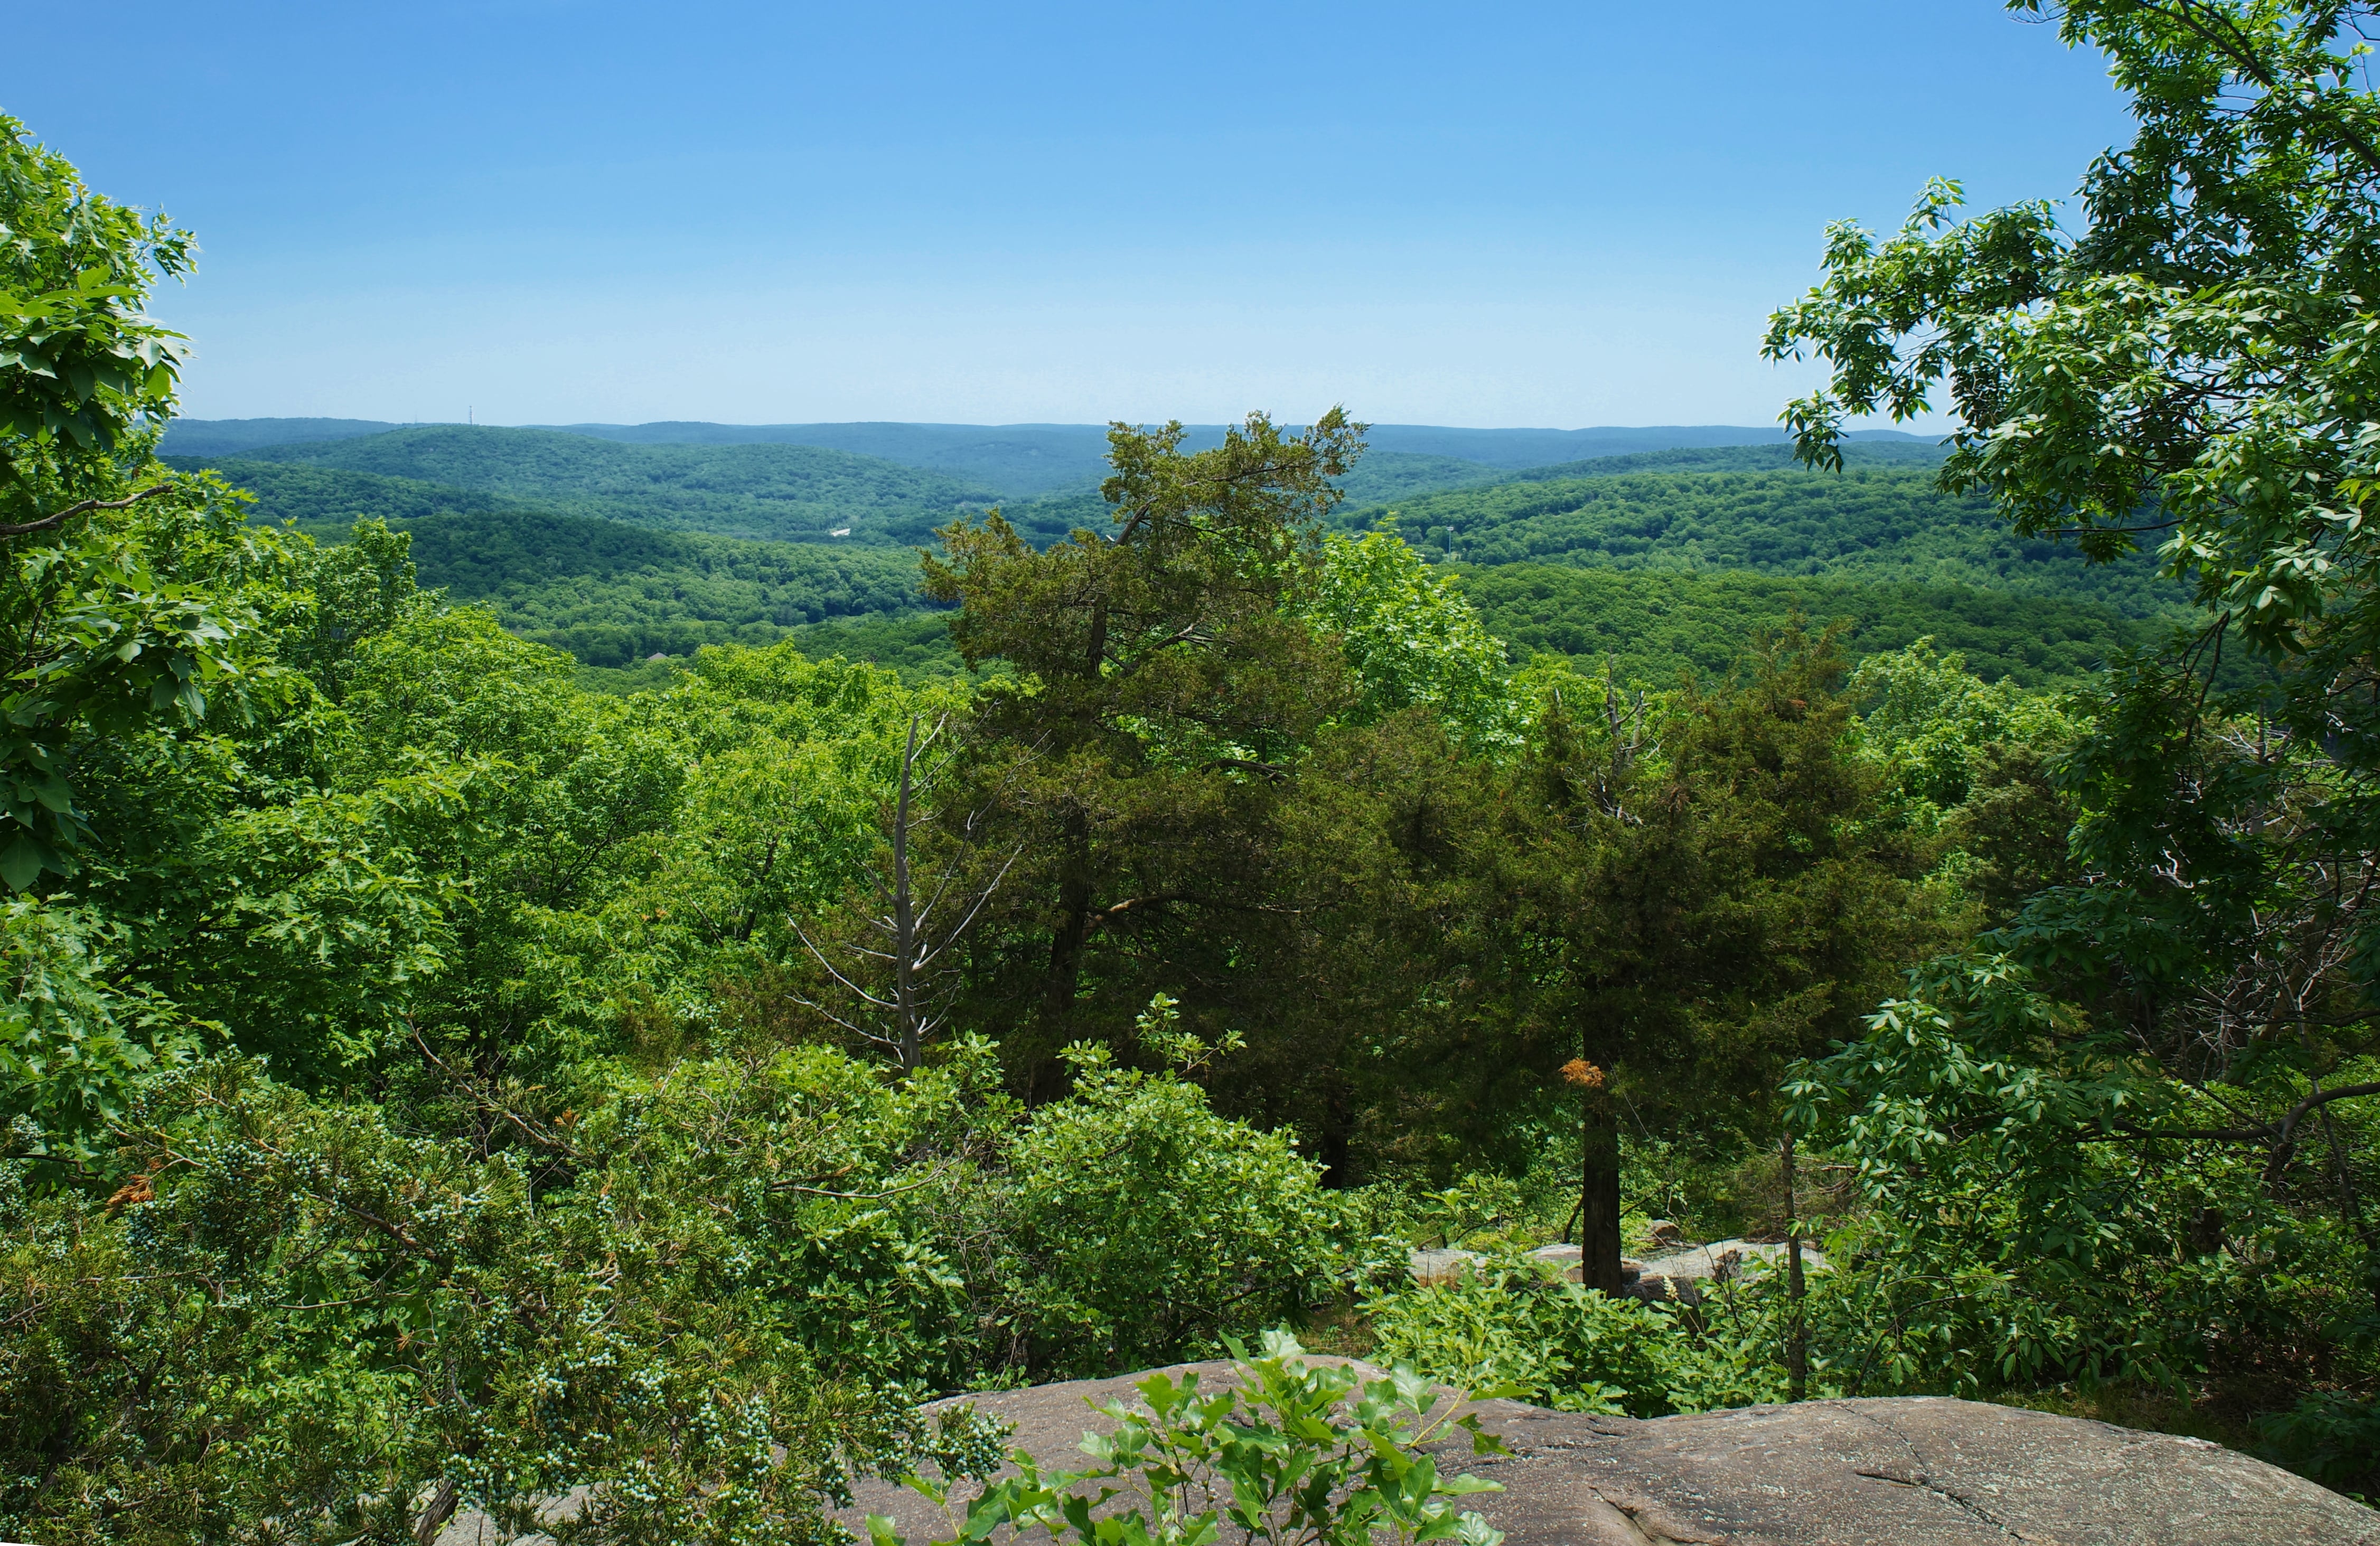 Doris Duke Trail viewpoint